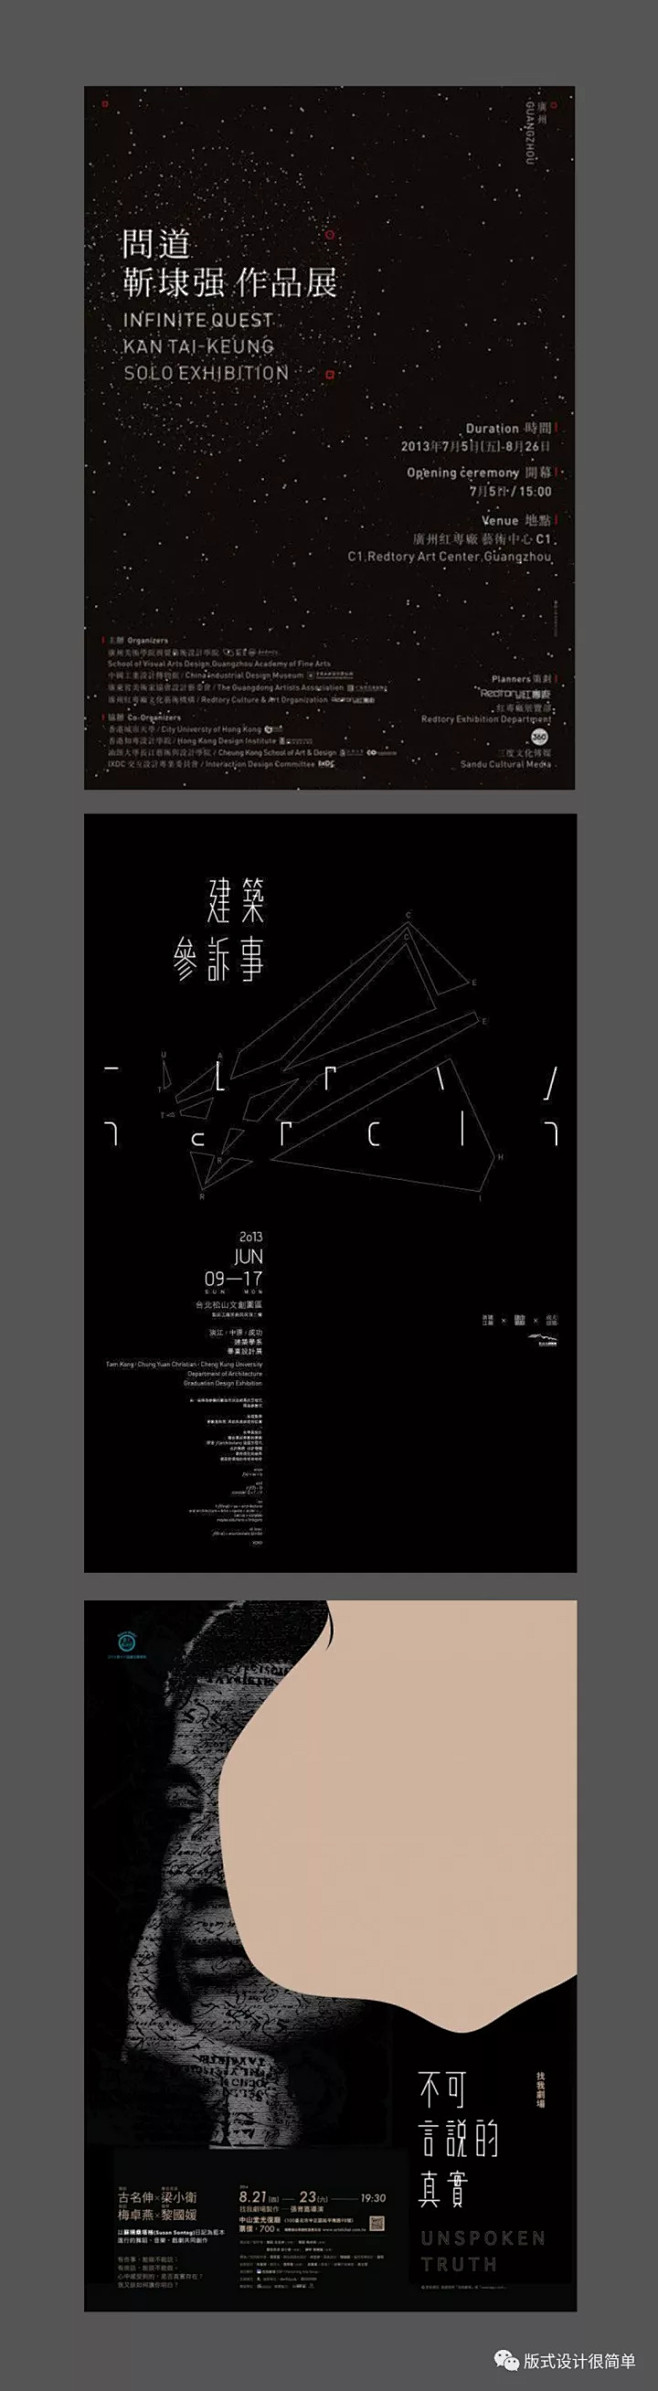 |海报设计|—黑白主题的中文海报